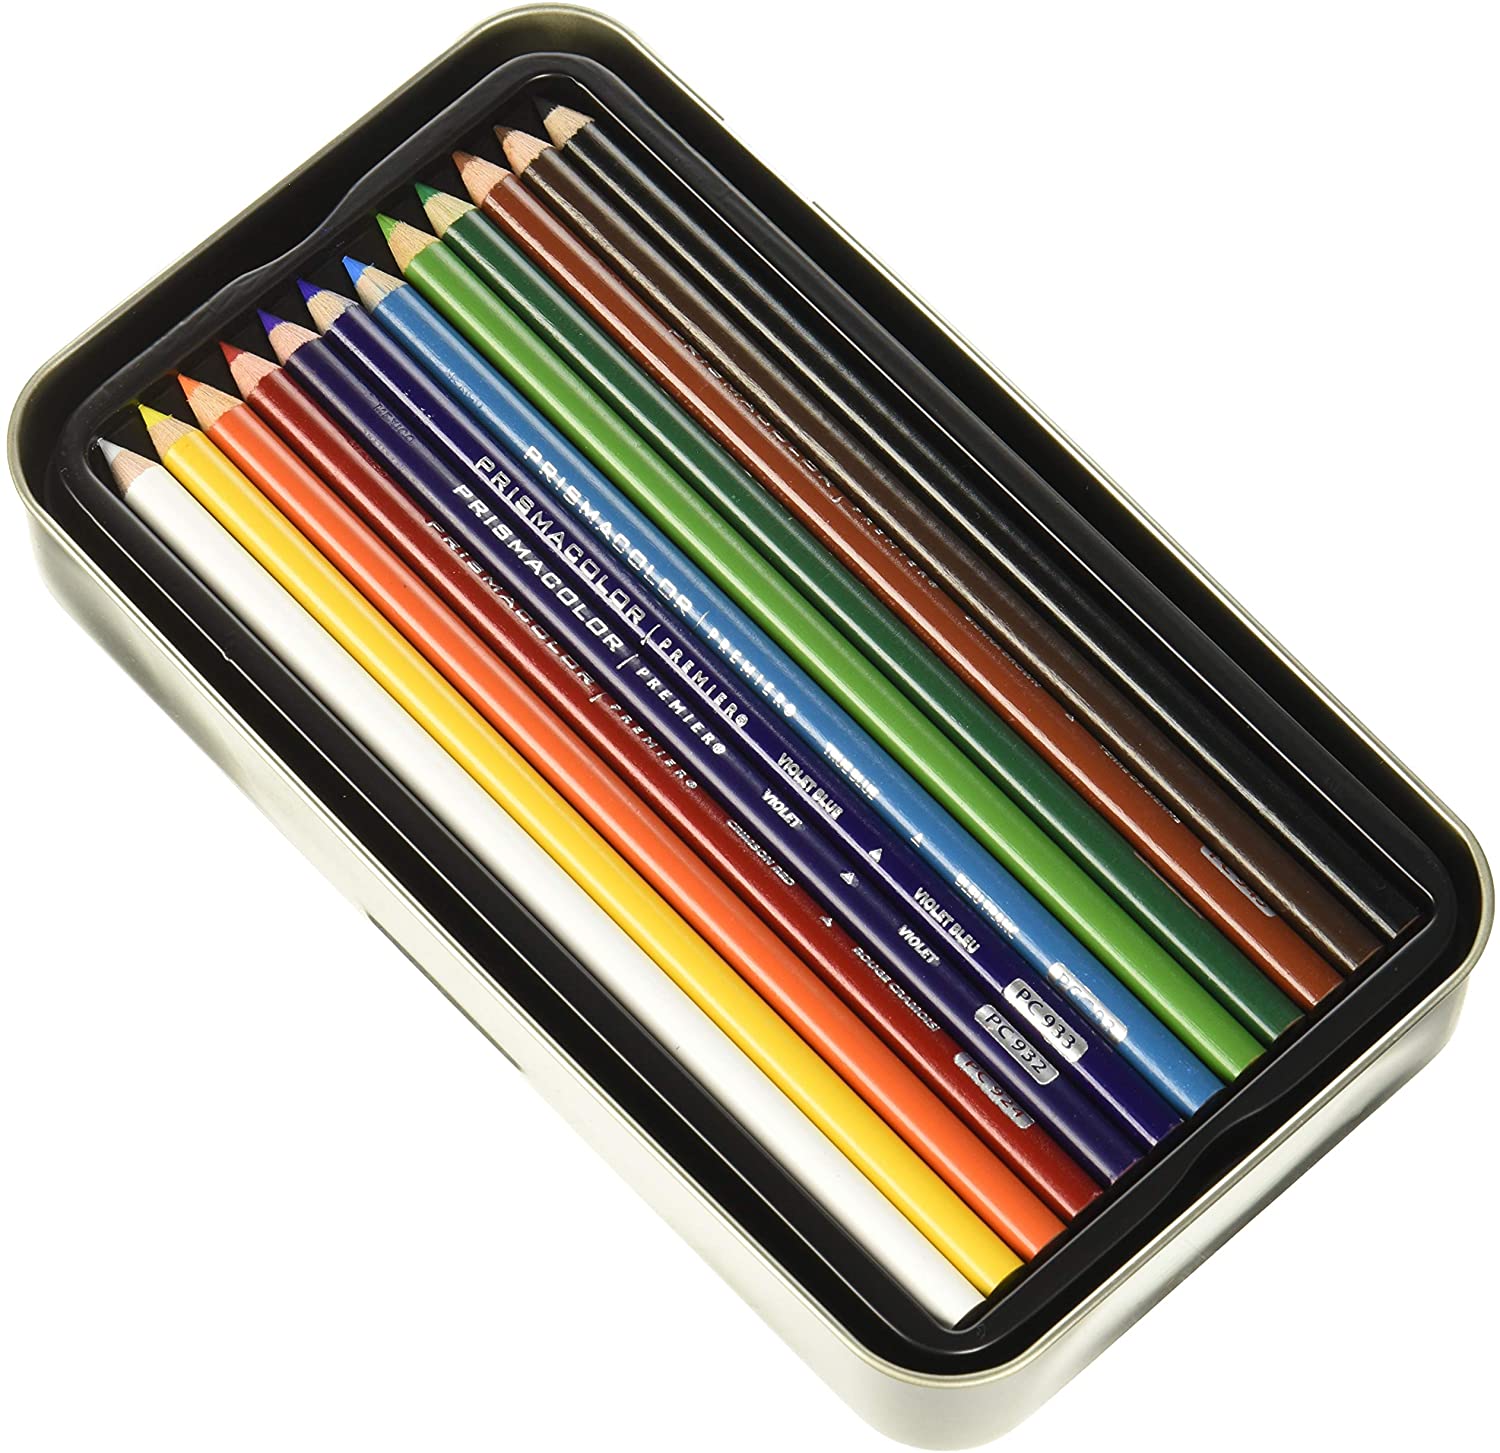 36 Ct PRISMACOLOR PREMIER Colored Pencils SOFT CORE Professional ARTIST  QUALITY